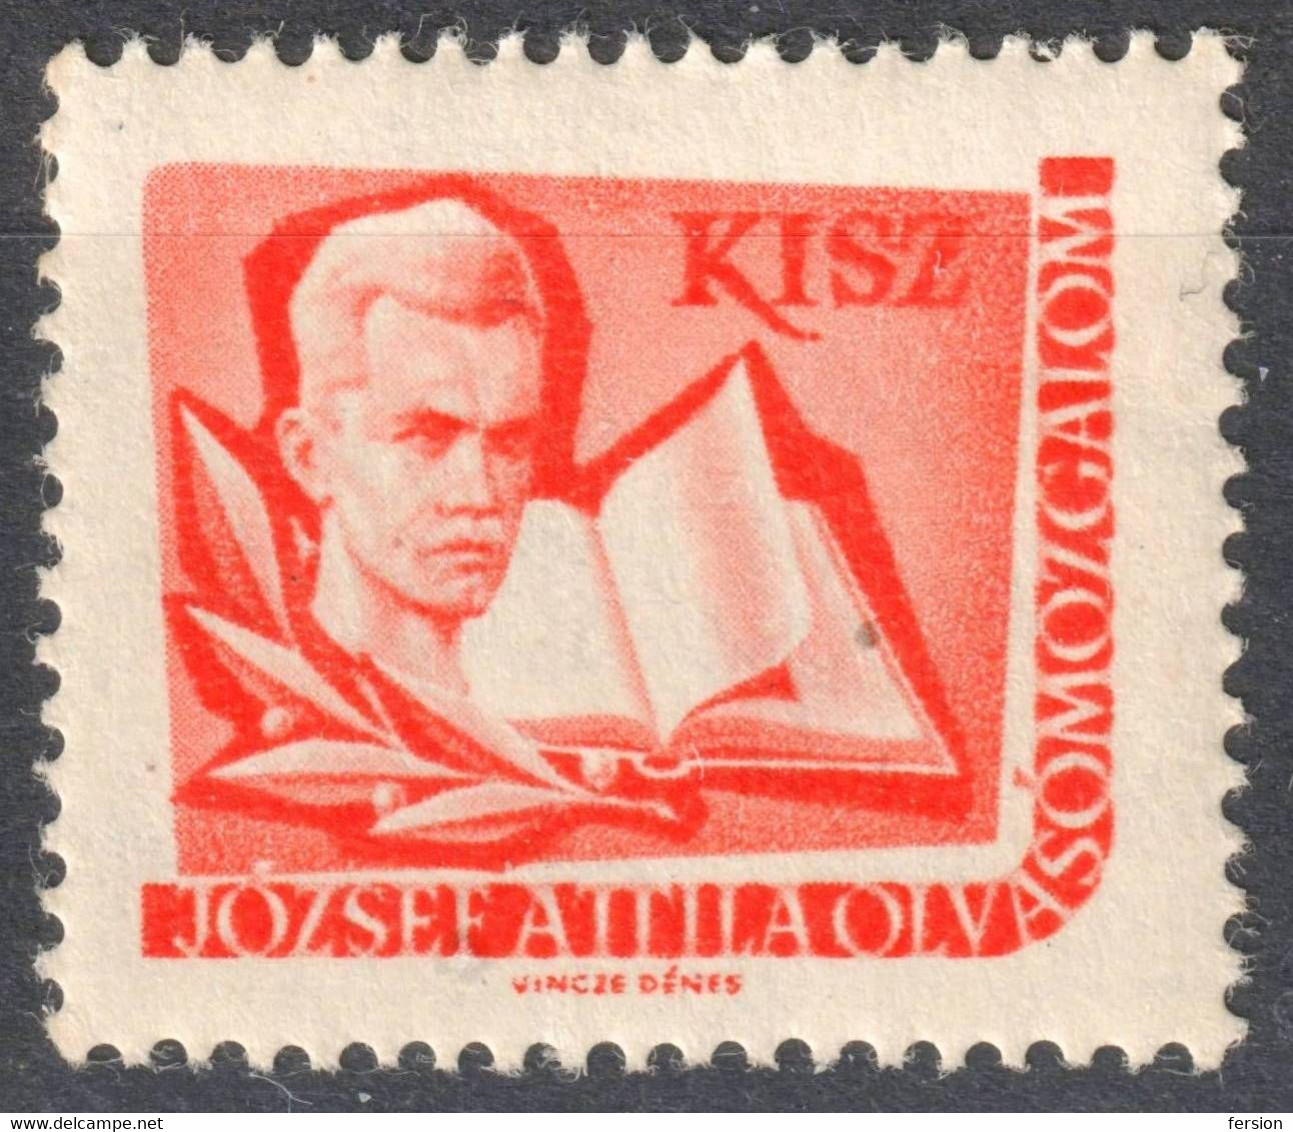 József Attila Poet Book KISZ Hungarian Young Communist League LIBRARY Member LABEL CINDERELLA VIGNETTE Hungary - Officials